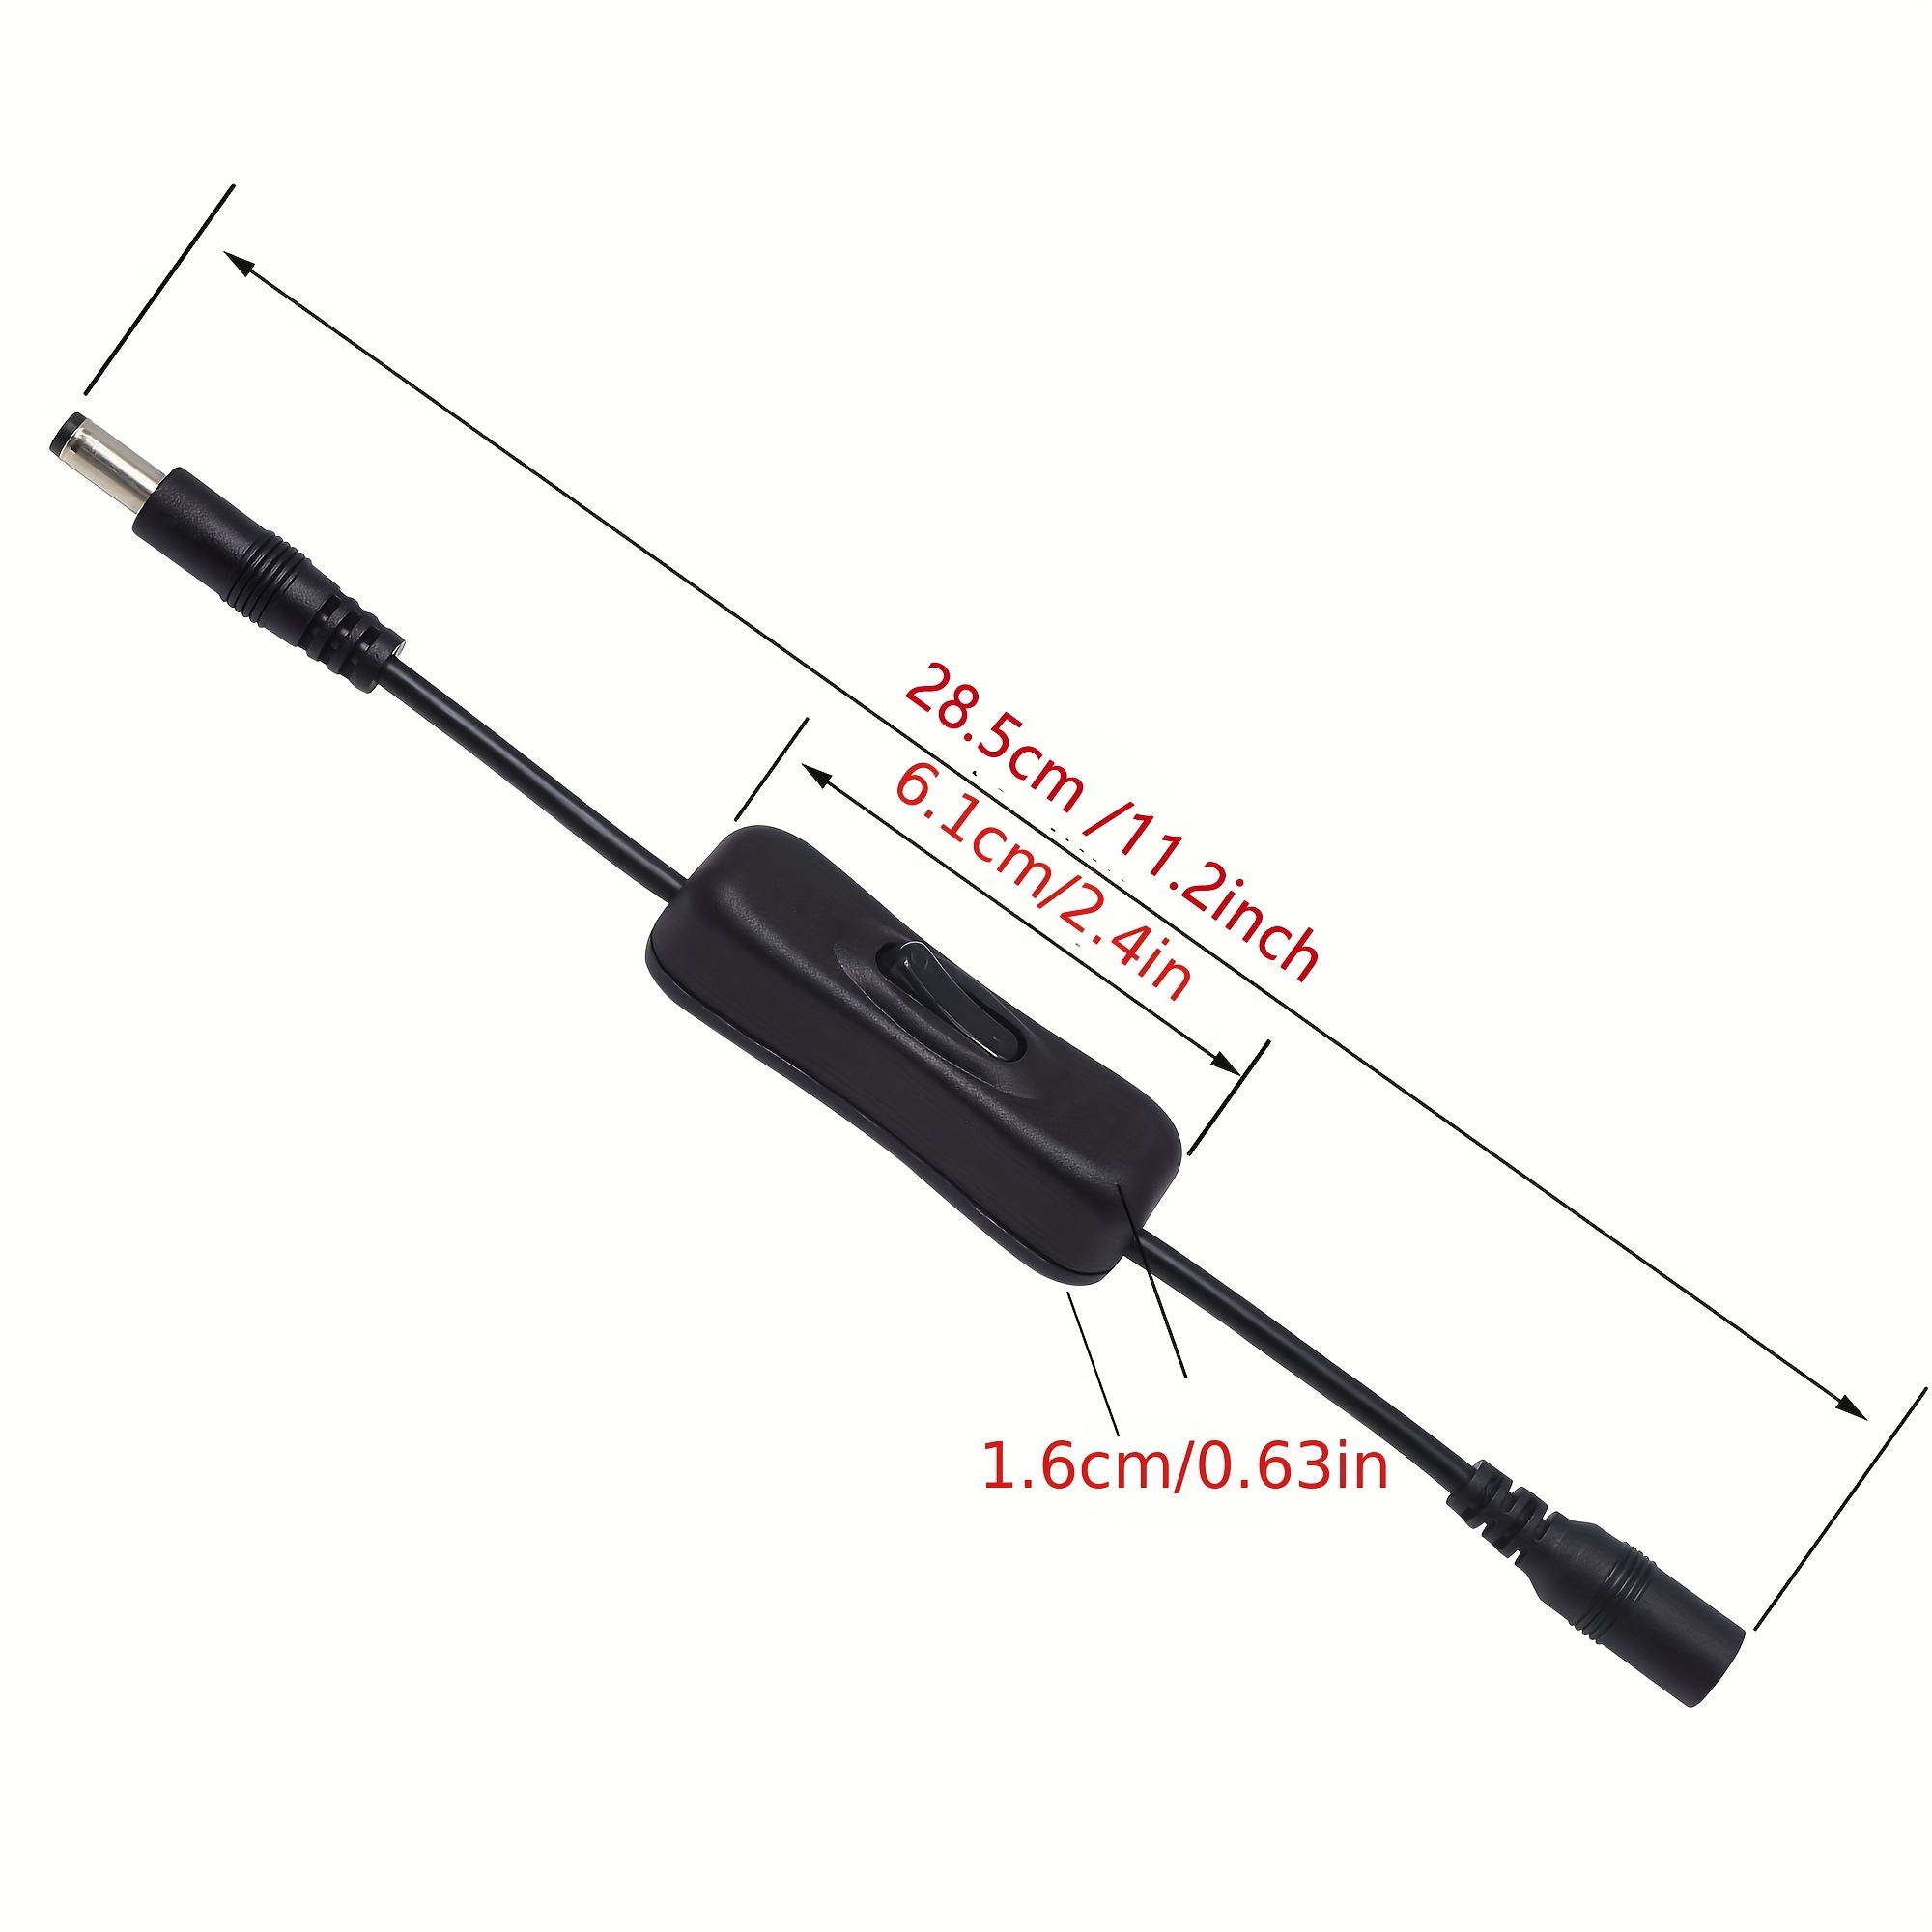 Câble d'extension d'alimentation avec connecteurs mâles DC-jack 5,5 x 2,1 mm